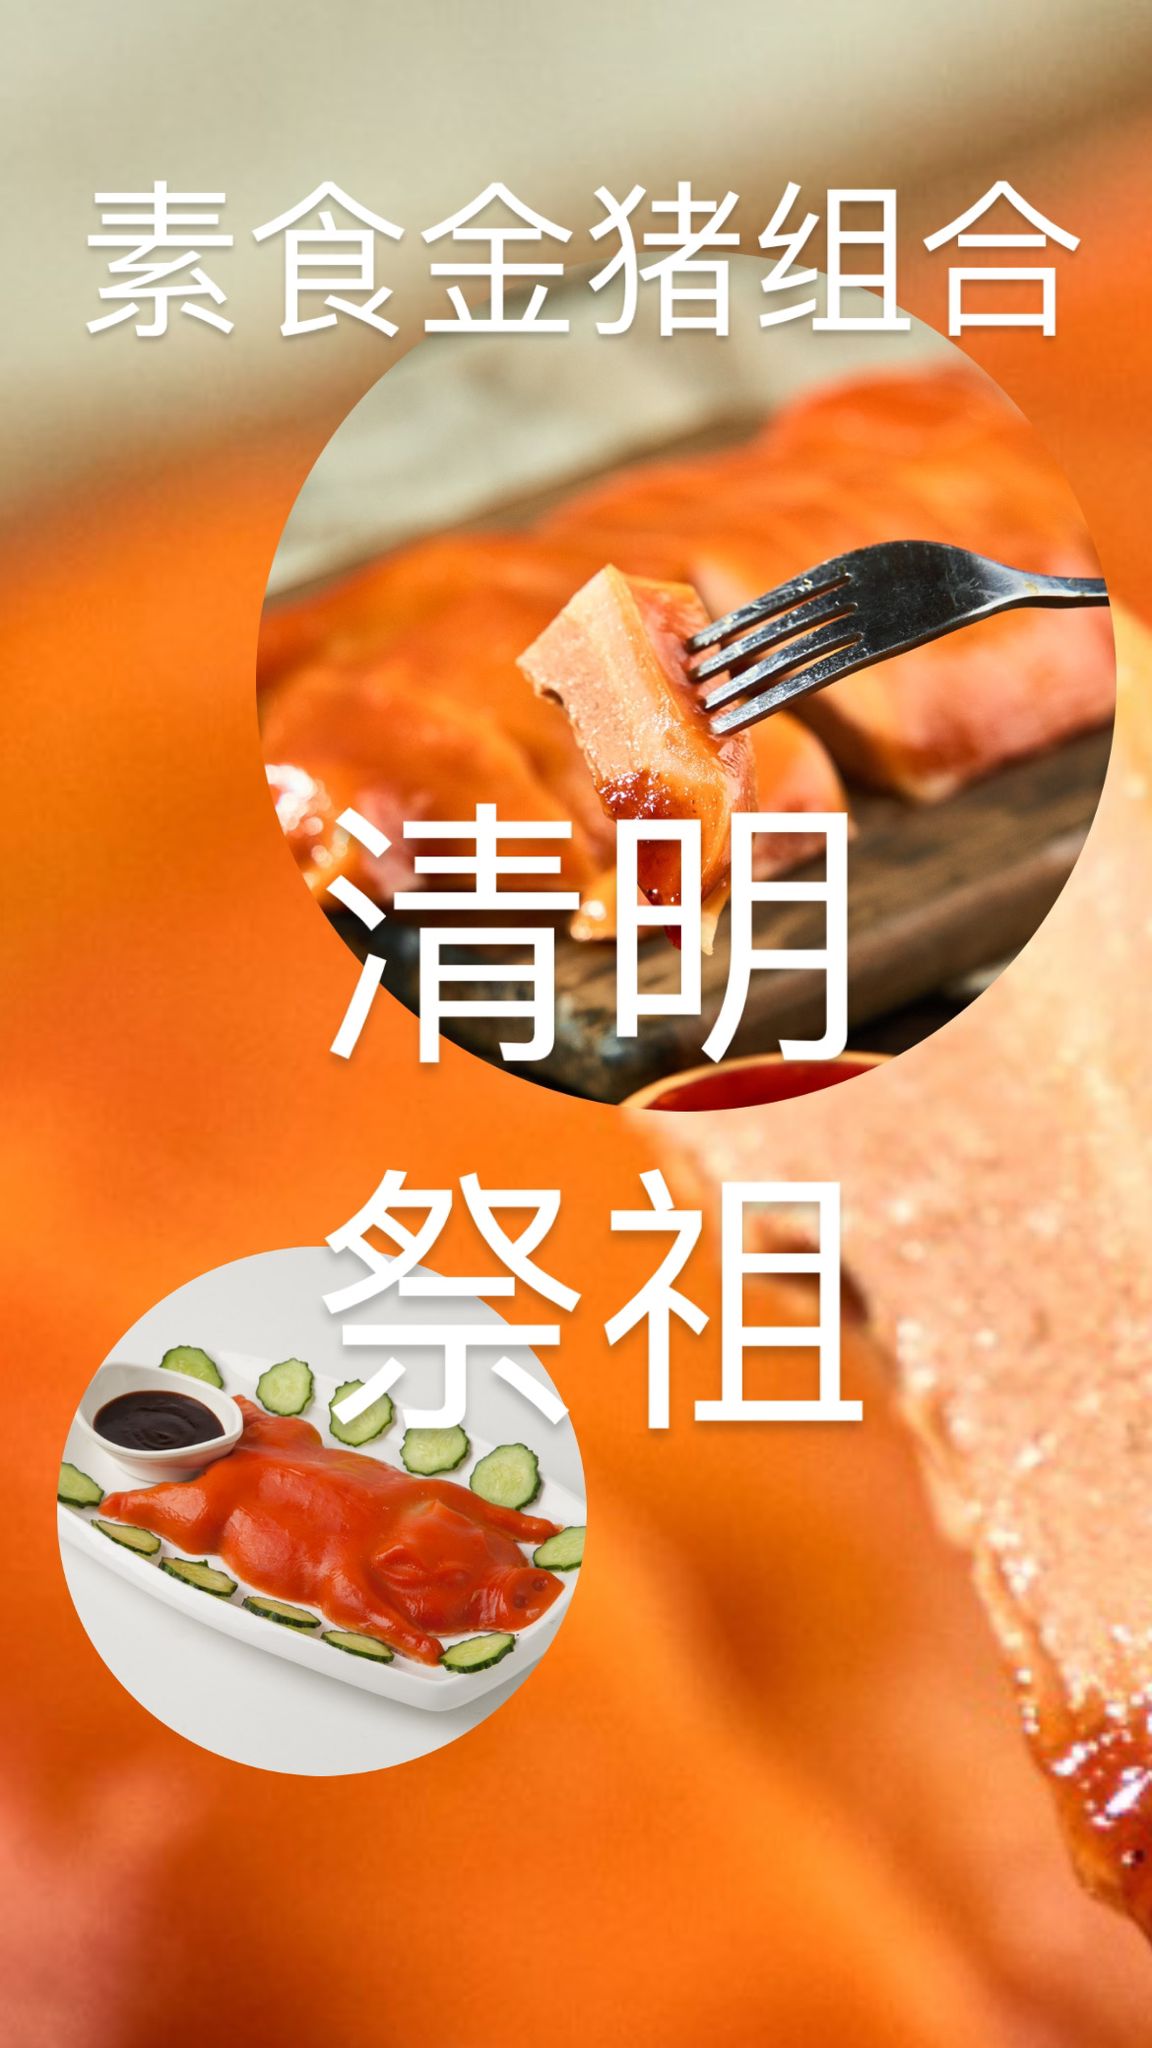 Image Bundle Vege banquet Suckling 清明祭祖 奇乡 - 素小金猪 500g x 3 